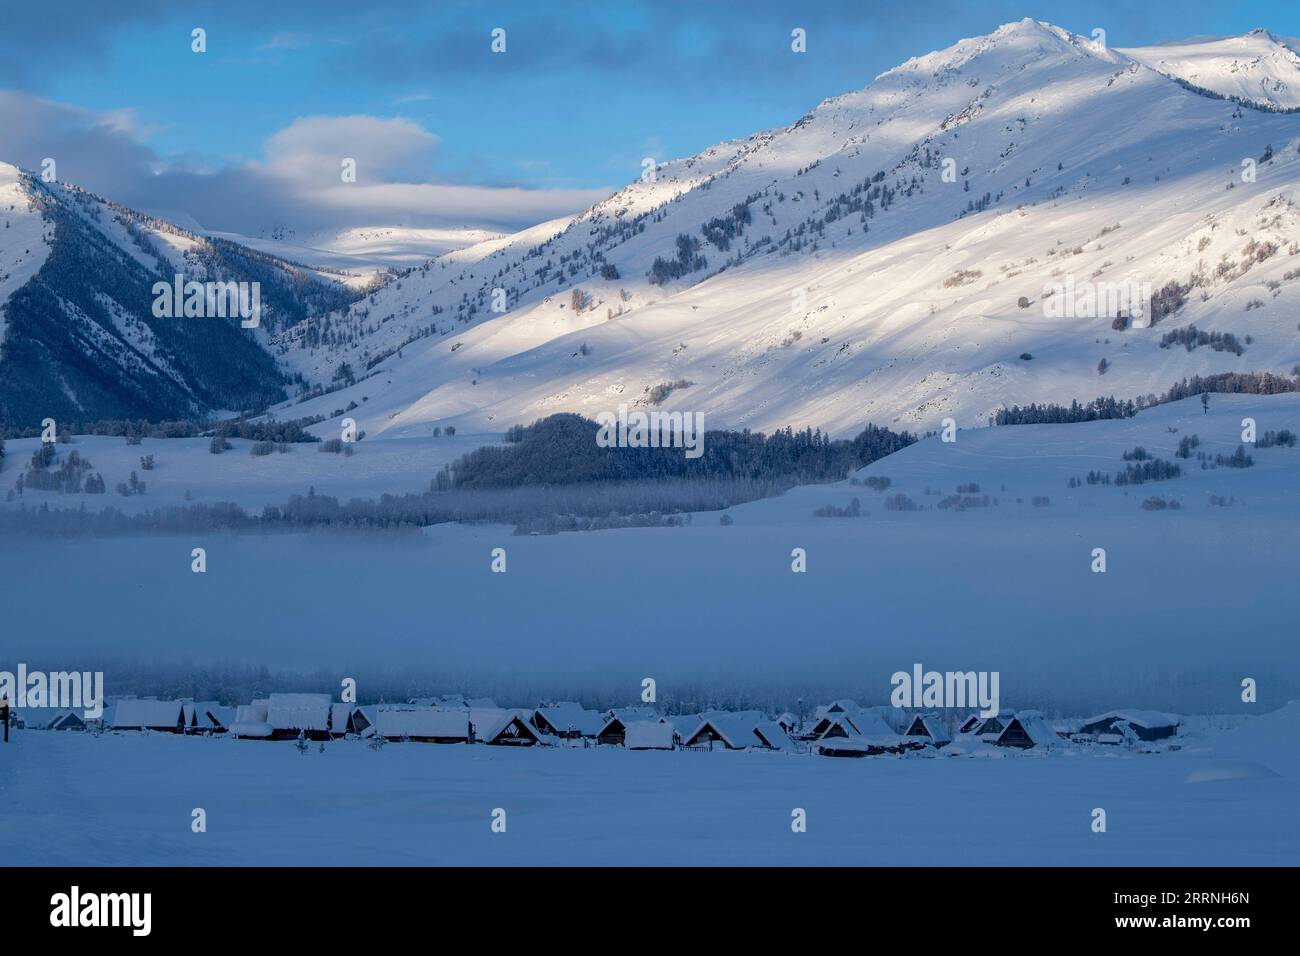 230113 -- ALTAY, 13 gennaio 2023 -- questa foto scattata l'8 gennaio 2023 mostra la località nevosa di Hemu nella prefettura di Altay, nella regione autonoma di Xinjiang Uygur della Cina nordoccidentale. La prefettura di Altay è nota per la sua lunga stagione invernale che può durare fino a otto mesi l'anno. Attrae sciatori di tutto il mondo con la sua vasta area di neve naturale. Negli ultimi anni la regione ha aspirato a stimolare il turismo invernale, attirando i visitatori con lo sci, la pesca sul ghiaccio e altre attività invernali. Ha accolto circa 1,02 milioni di turisti tra il dicembre 2022 e l'11 gennaio 2023. CINA-XINJIANG-ALTAY-TURISMO INVERNALE CN HUX Foto Stock